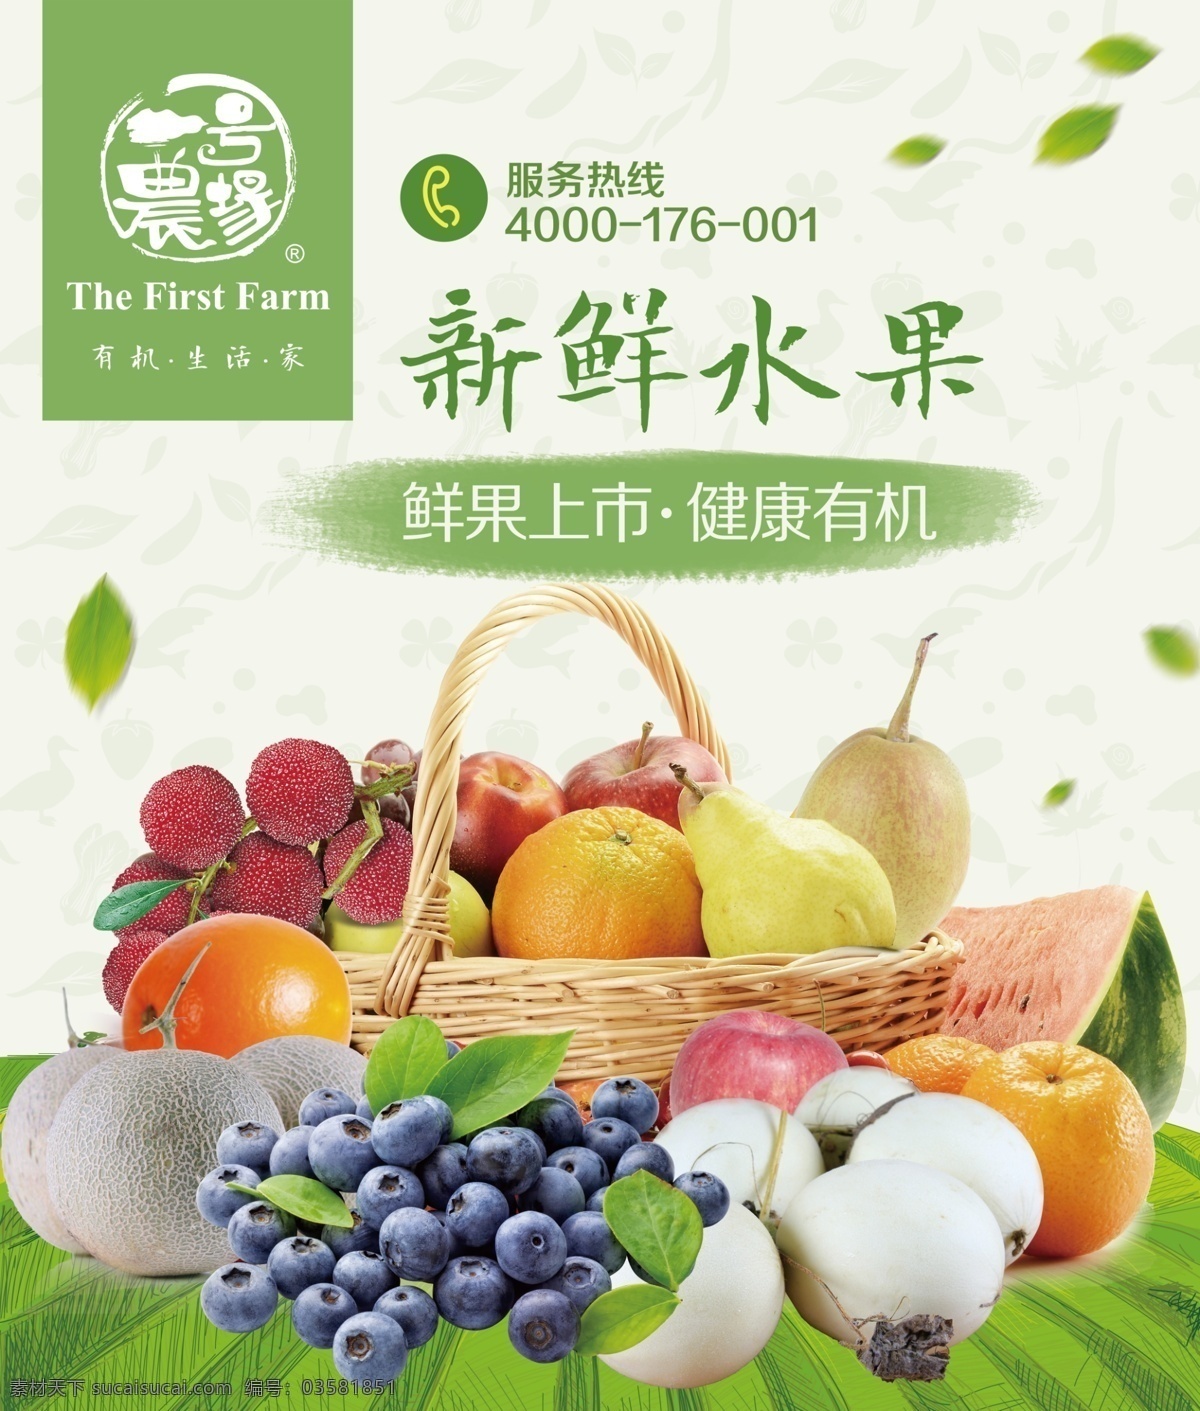 水果宣传单页 有机 绿色 水果 套餐 蓝莓 甜瓜 杨梅 宣传 单页 dm宣传单